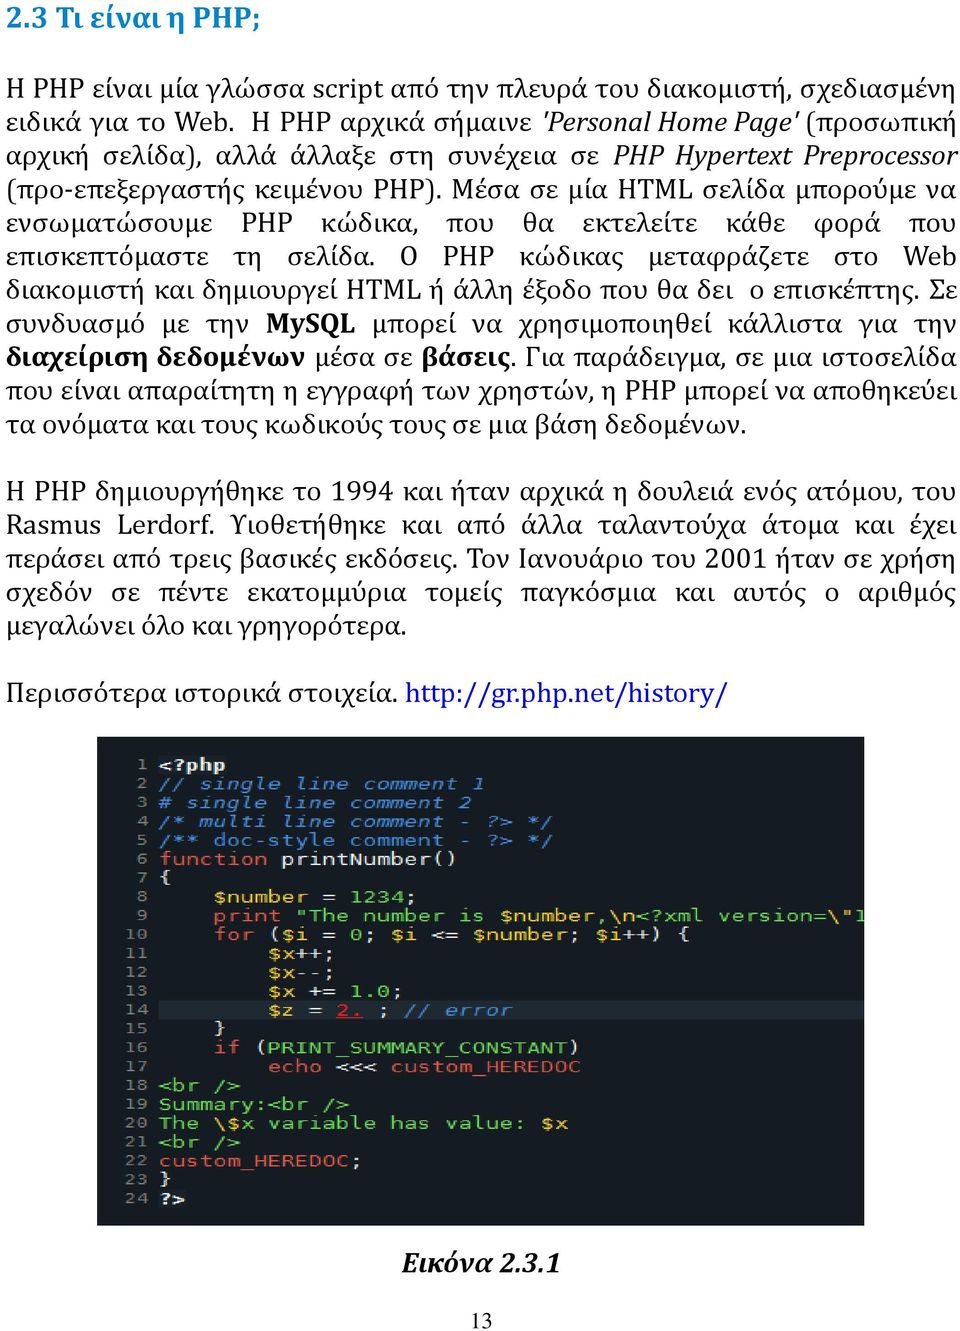 Μέσα σε μία HTML σελίδα μπορούμε να ενσωματώσουμε PHP κώδικα, που θα εκτελείτε κάθε φορά που επισκεπτόμαστε τη σελίδα.